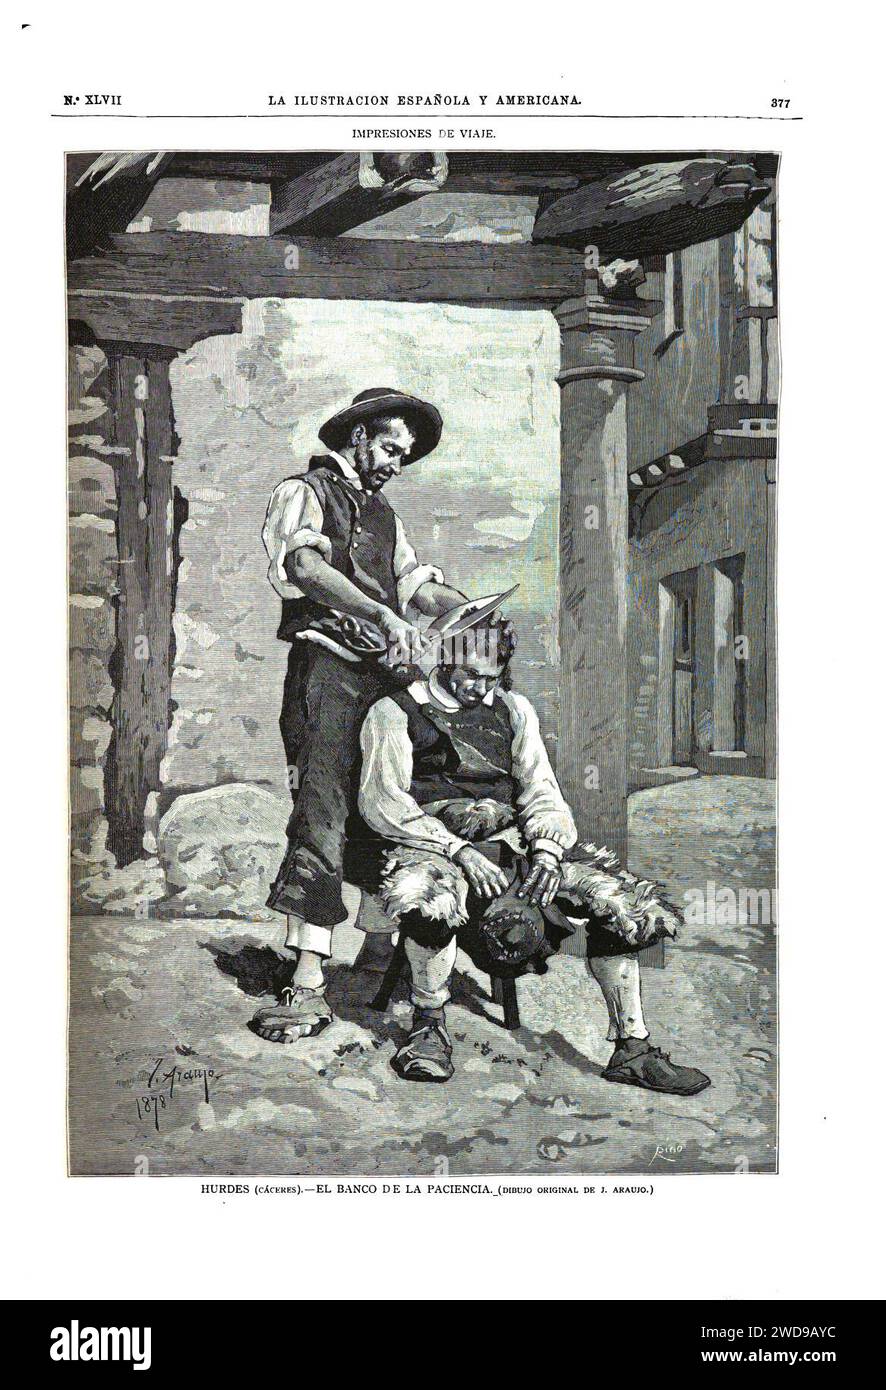 22. Dezember 1880, La Ilustración Española y Americana, Impresiones de viaje, Hurdes (Cáceres), El banco de la paciencia. Stockfoto